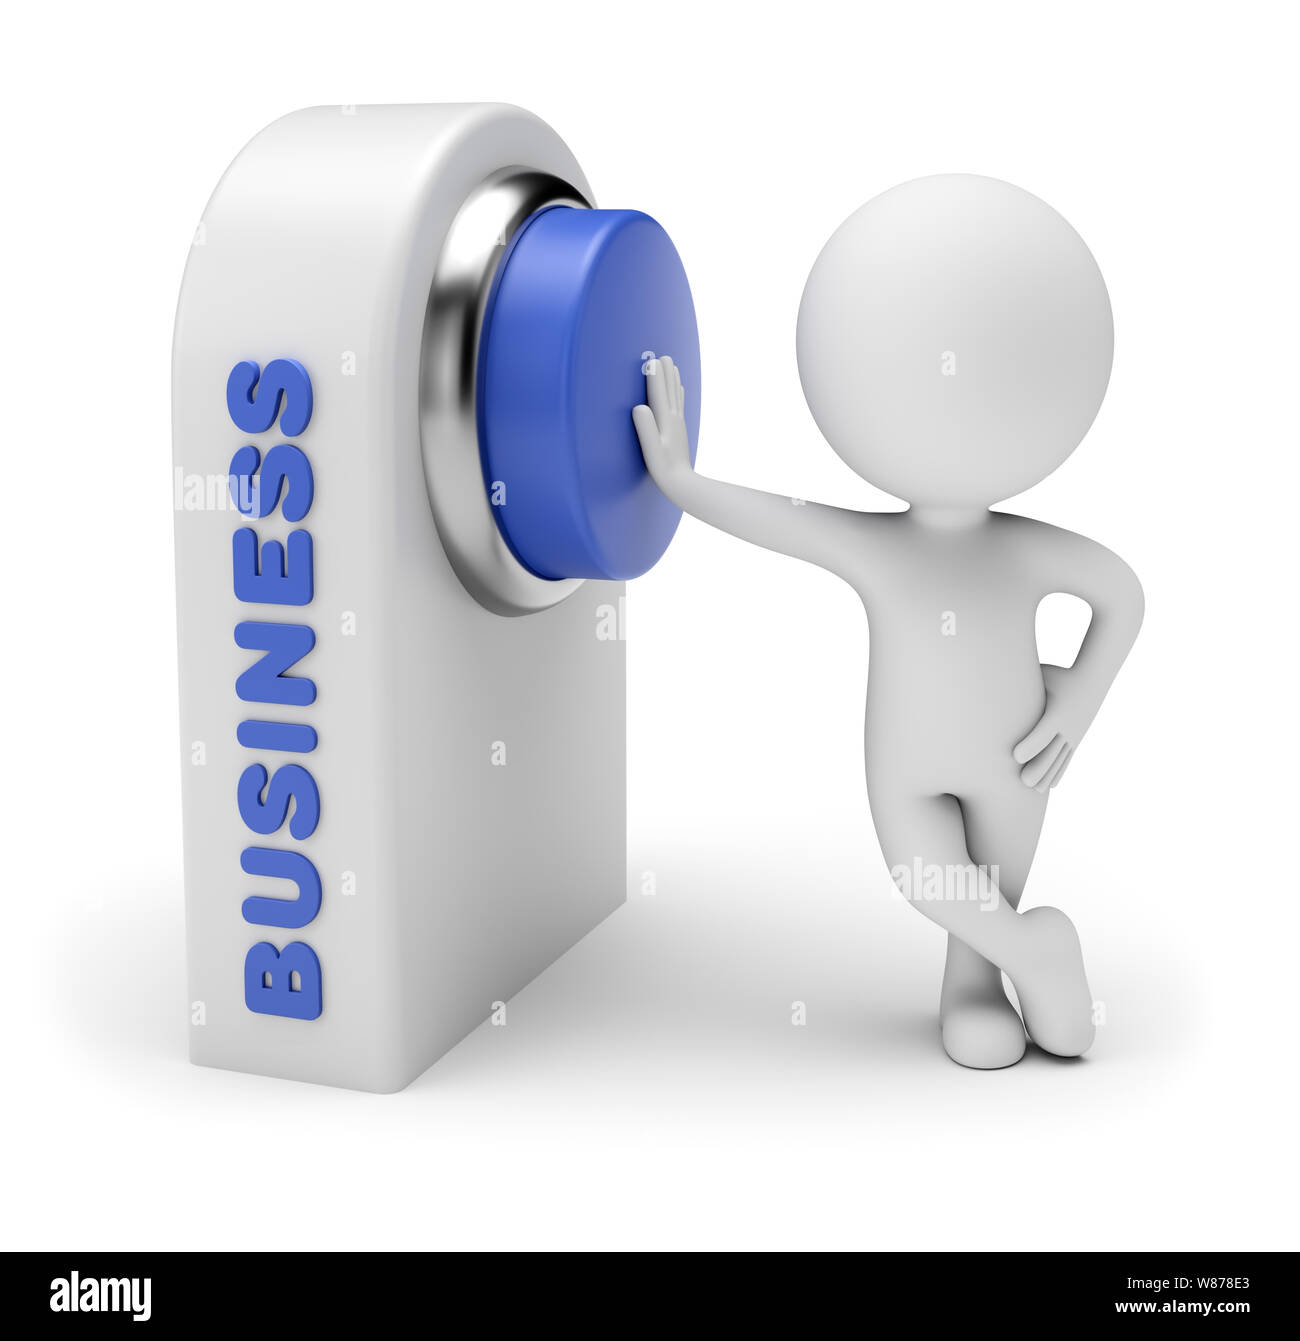 Gente pequeña 3d - fácil entrar en el negocio. Pulsando el botón azul del control board que word business. 3D rendering. Aislado sobre fondo blanco. Foto de stock